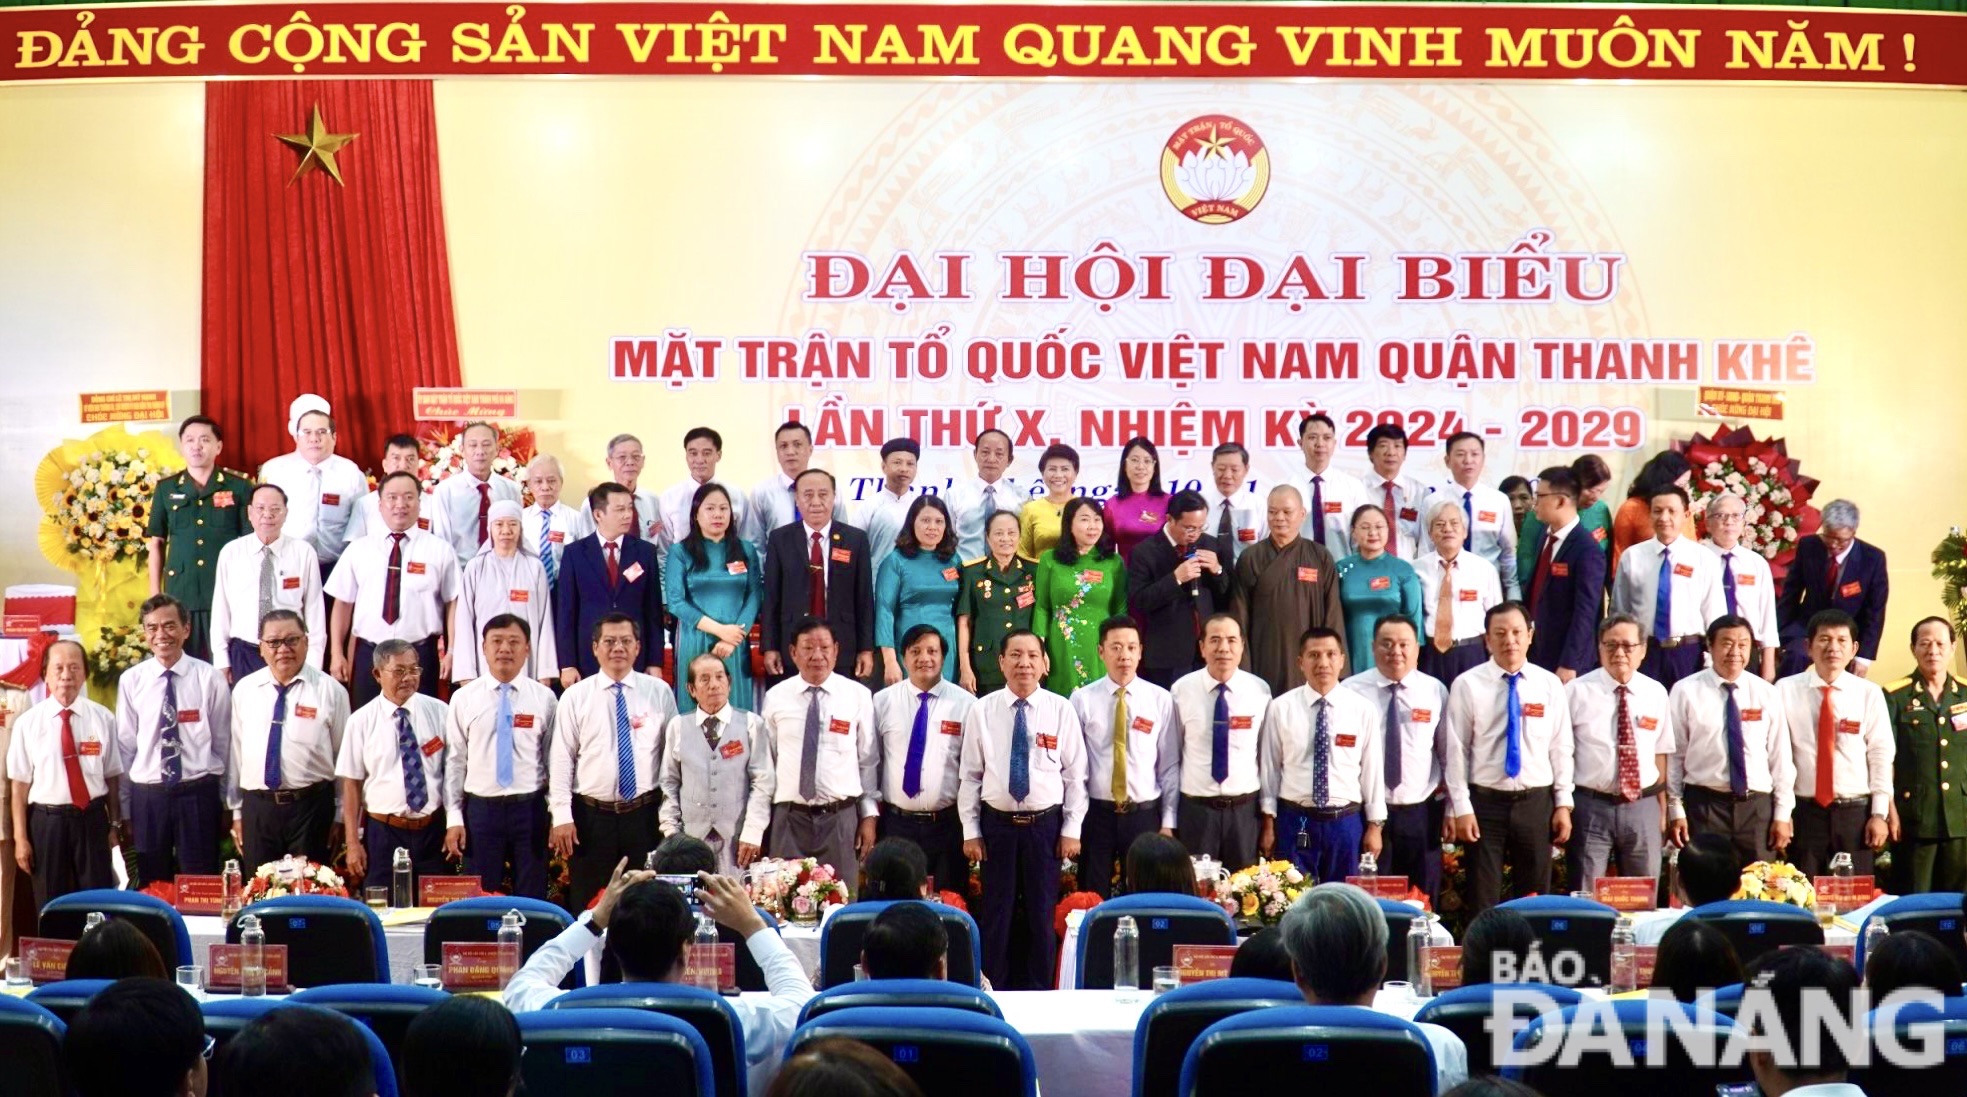 Ðại hội đã hiệp thương cử 62 vị vào Ủy ban MTTQ Việt Nam quận Thanh Khê khóa X, nhiệm kỳ 2024-2029. Trong ảnh: Các ủy viên Ủy ban MTTQ Việt Nam quận Thanh Khê khóa X chụp ảnh lưu niệm. Ảnh: N.QUANG